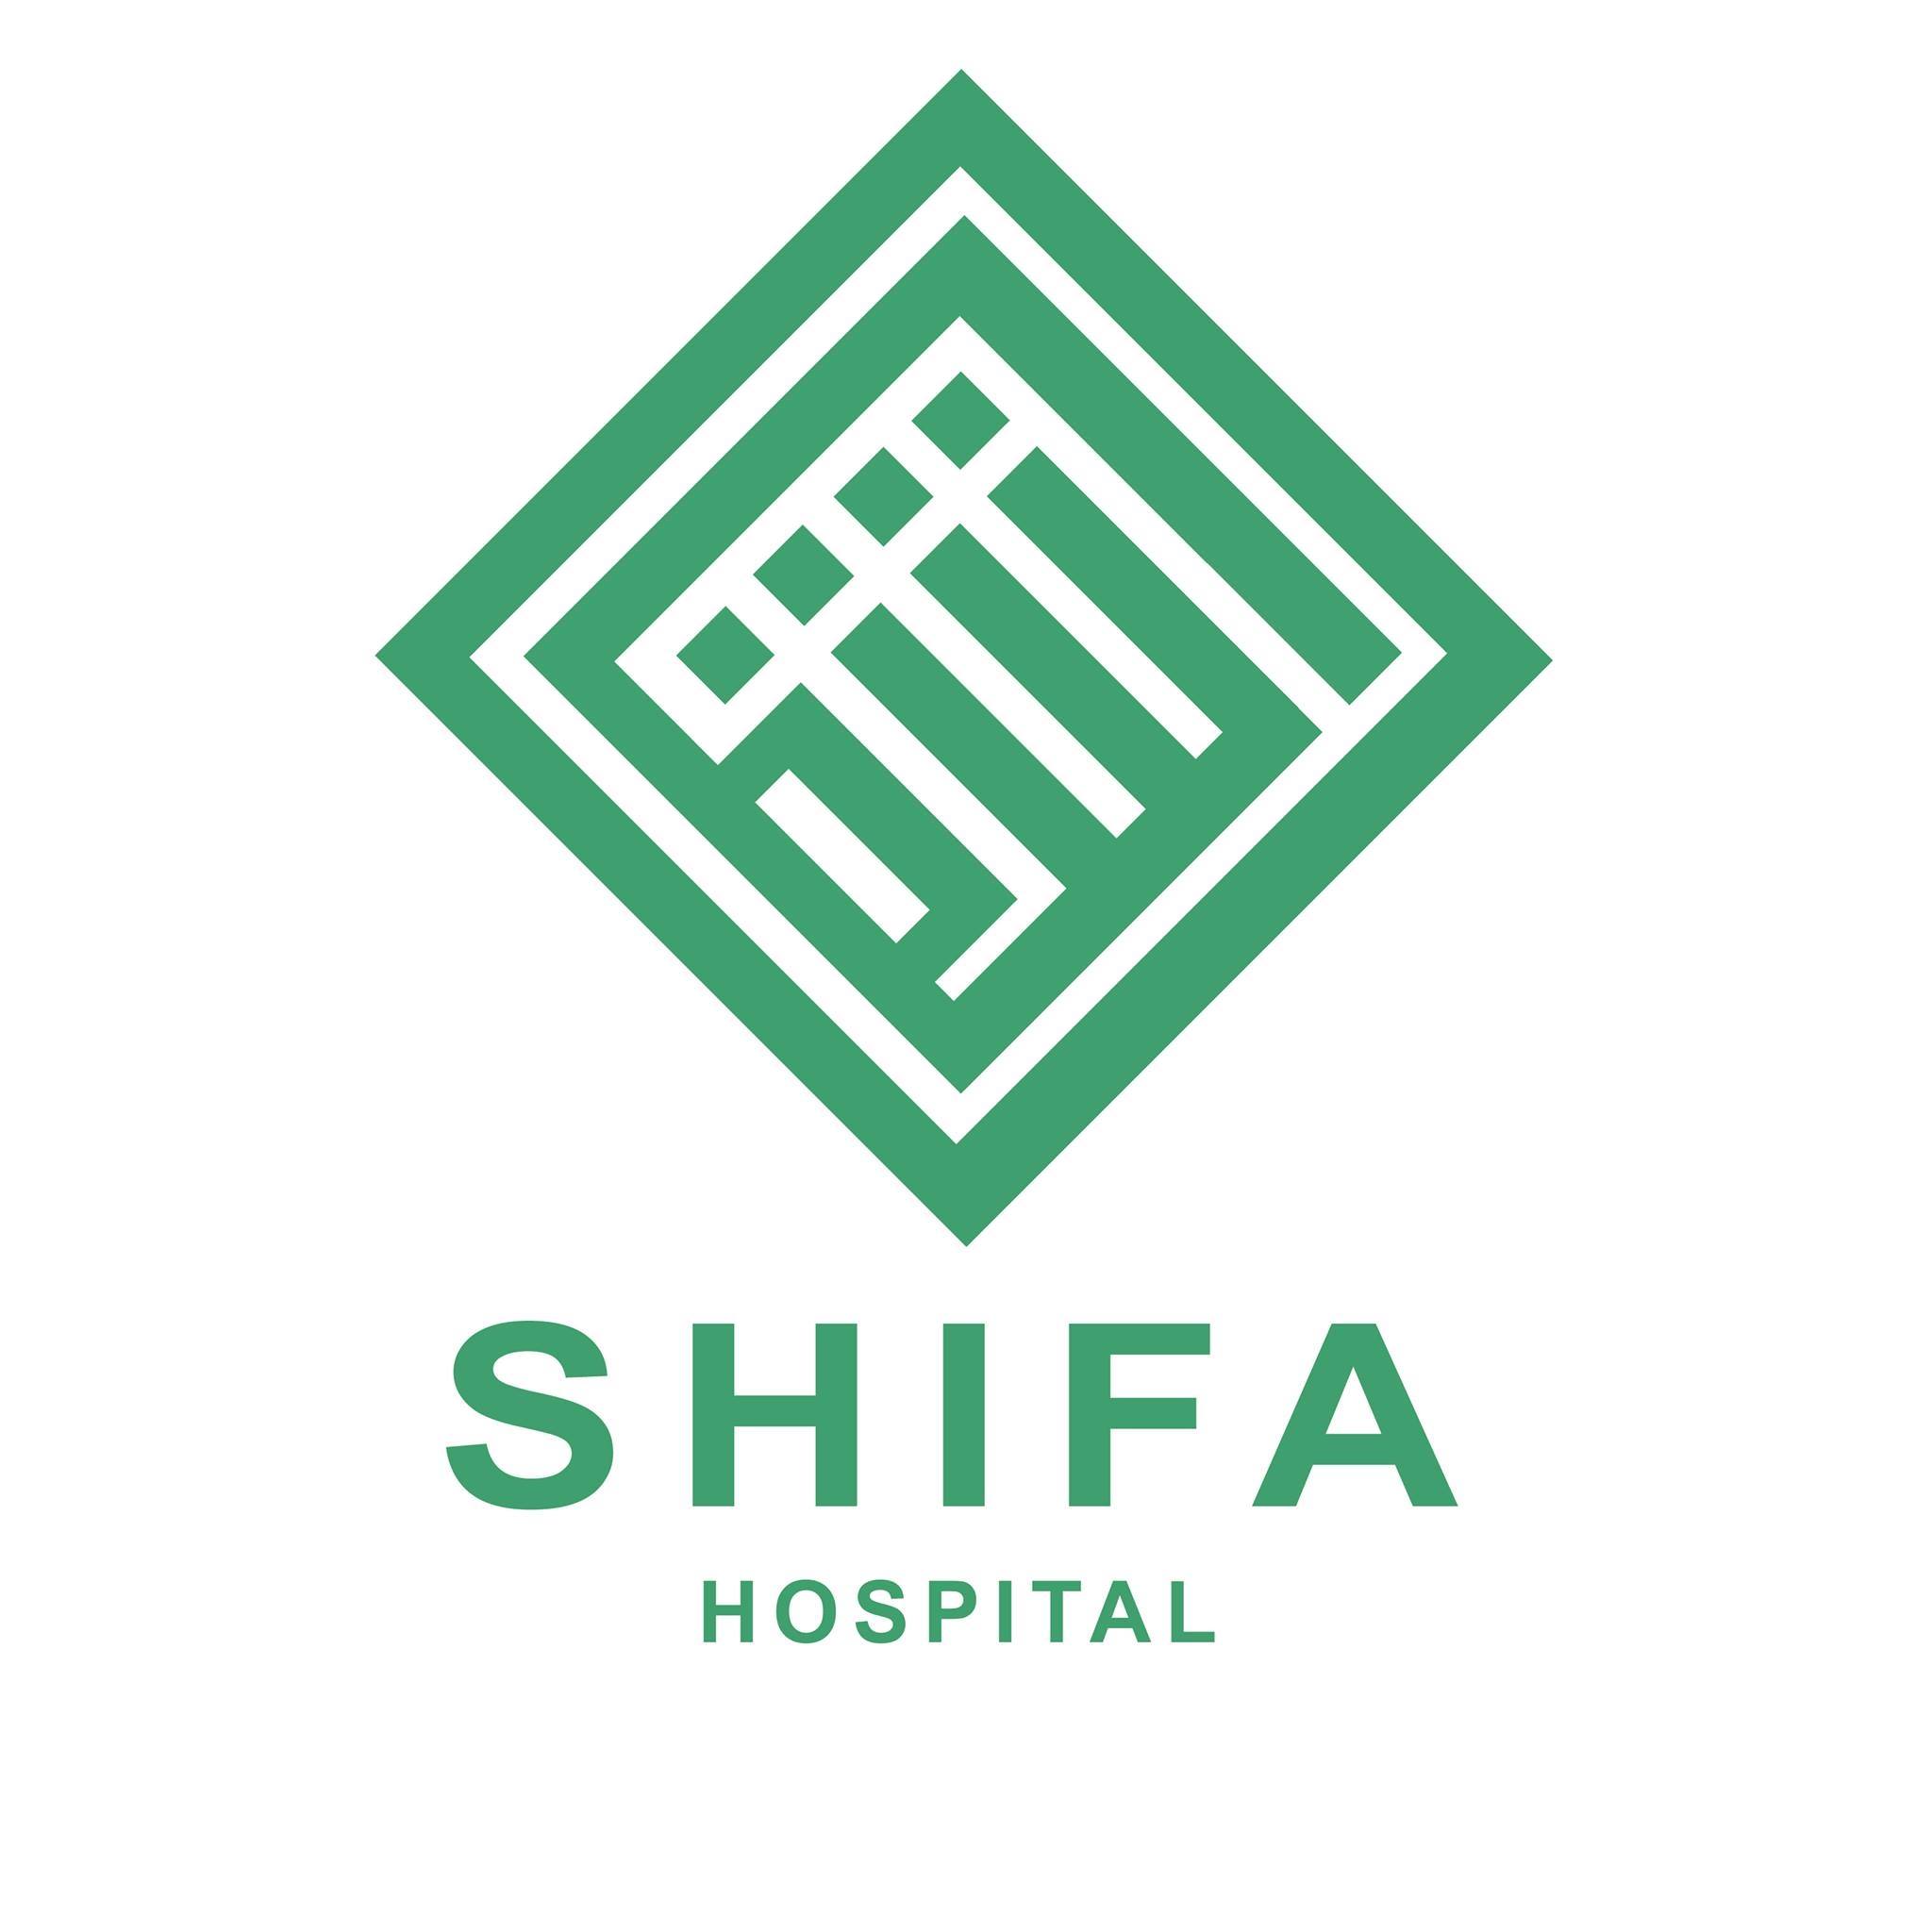 shifa hospital